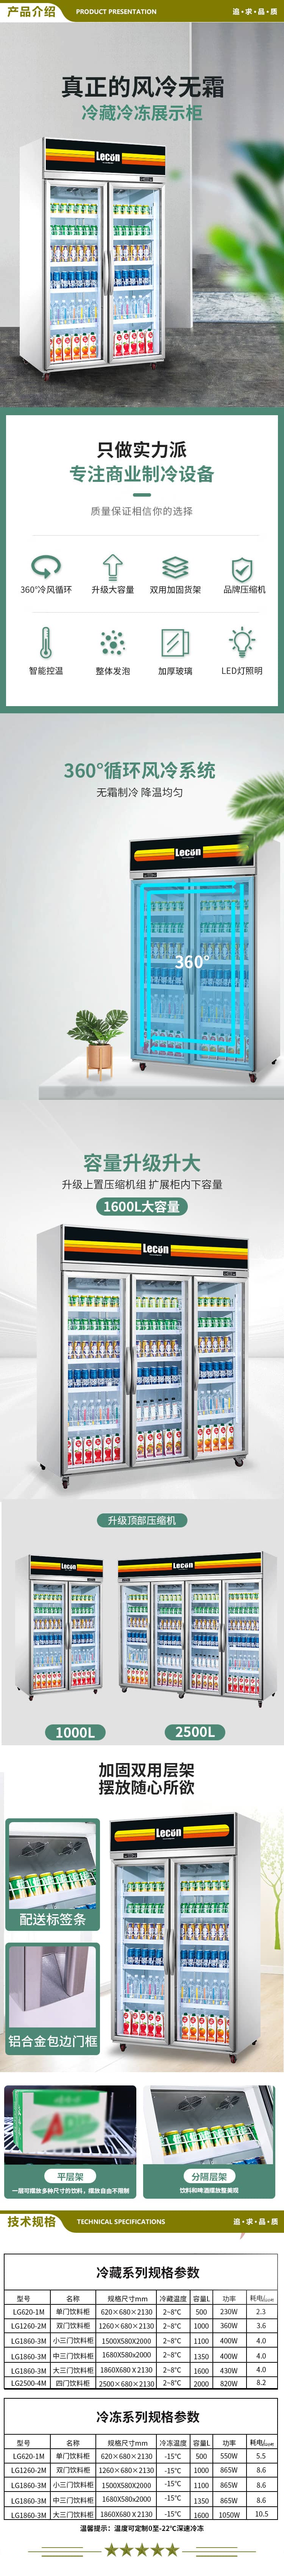 乐创(lecon) L-1680FL-1 超市冰柜商用展示柜冷藏风冷饮料柜士多店便利店冰箱水果冷藏柜保鲜柜啤酒柜  2.jpg